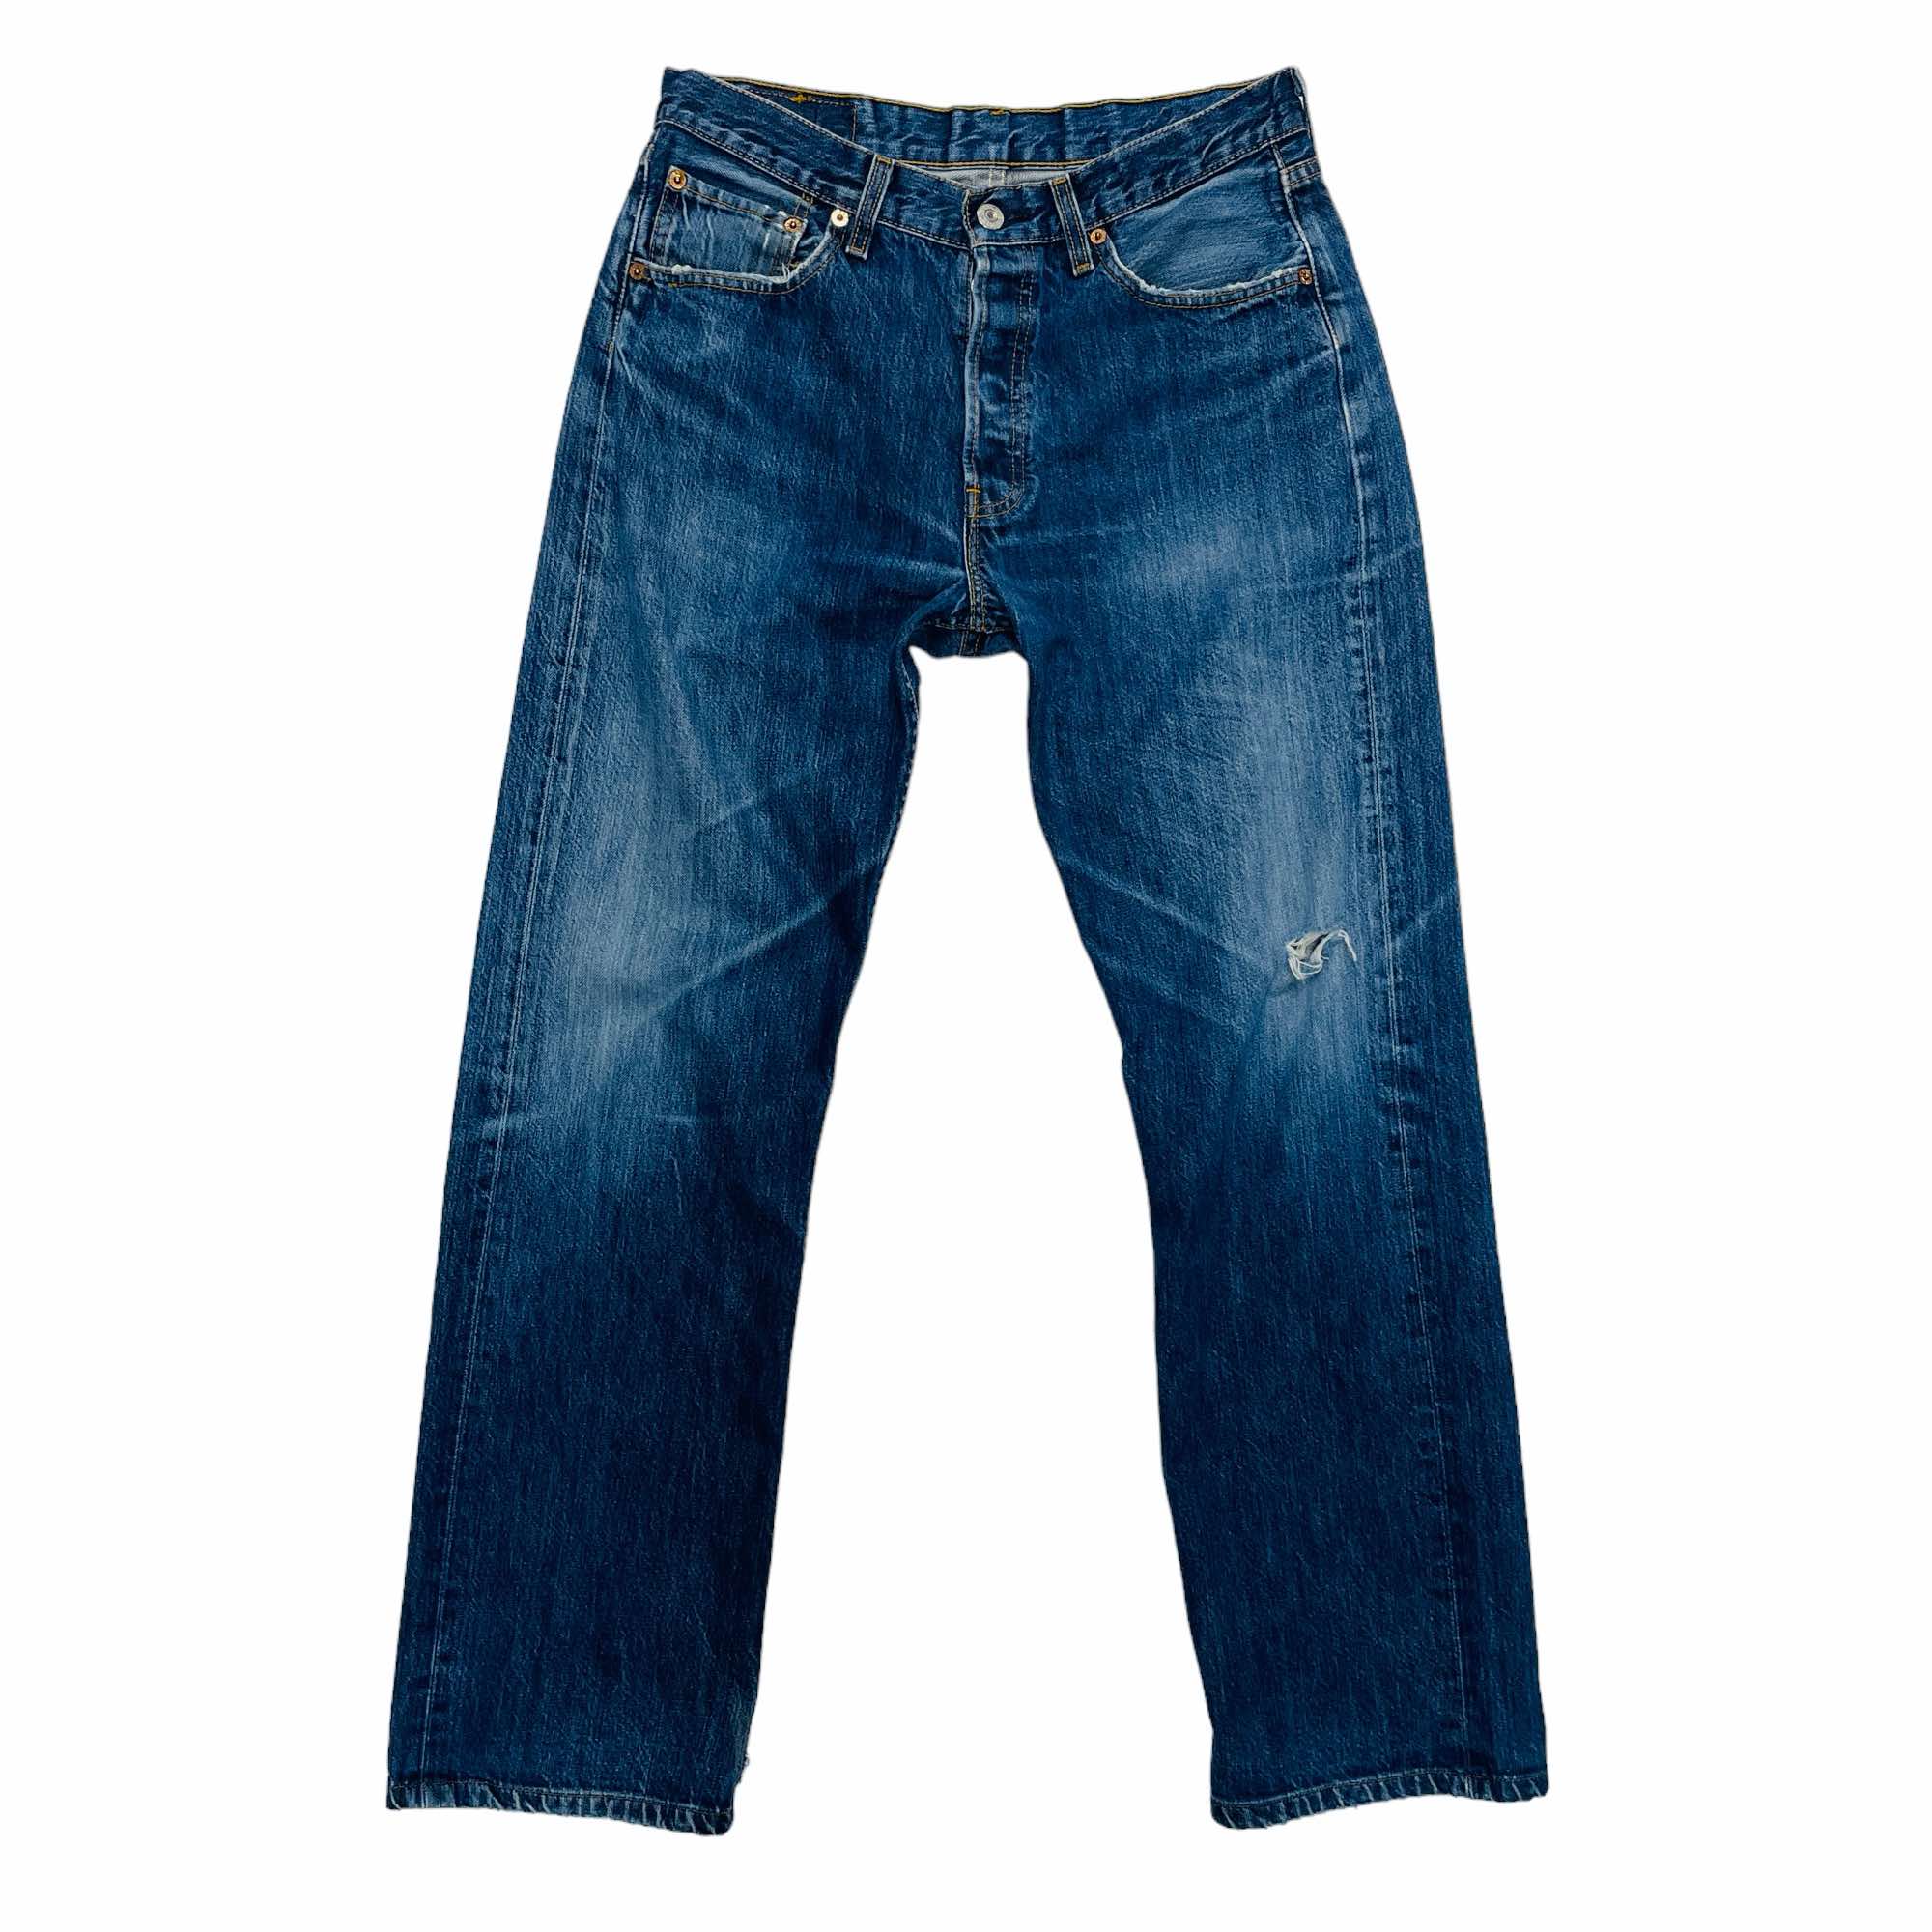 Levi's 501 Denim Jeans - W32 L34